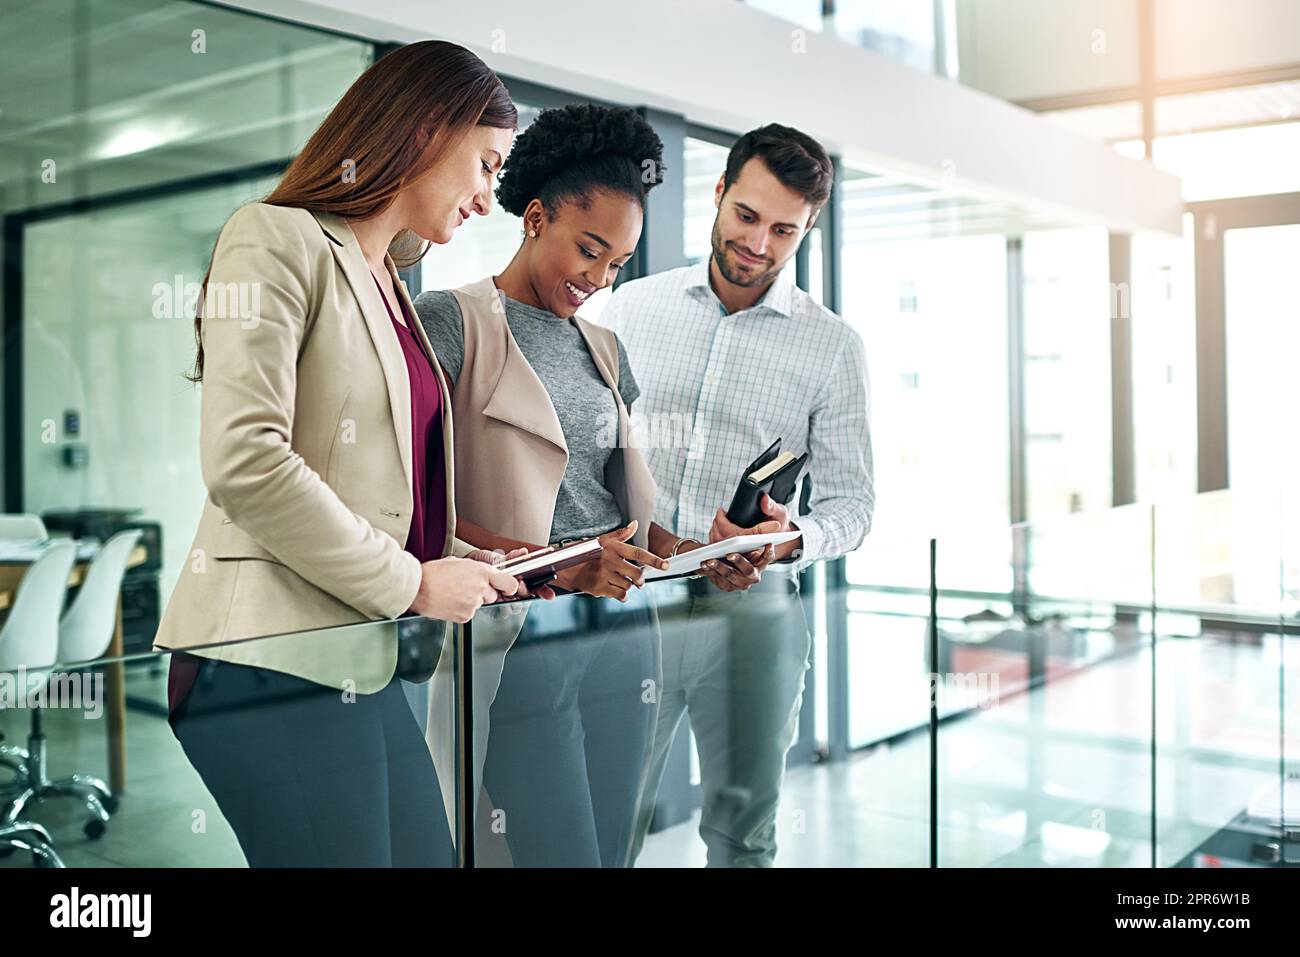 Gemeinsam ins Geschäft kommen. Aufnahme einer Gruppe von Kollegen, die sich über ein digitales Tablet unterhalten, während sie in einem großen, modernen Büro stehen. Stockfoto